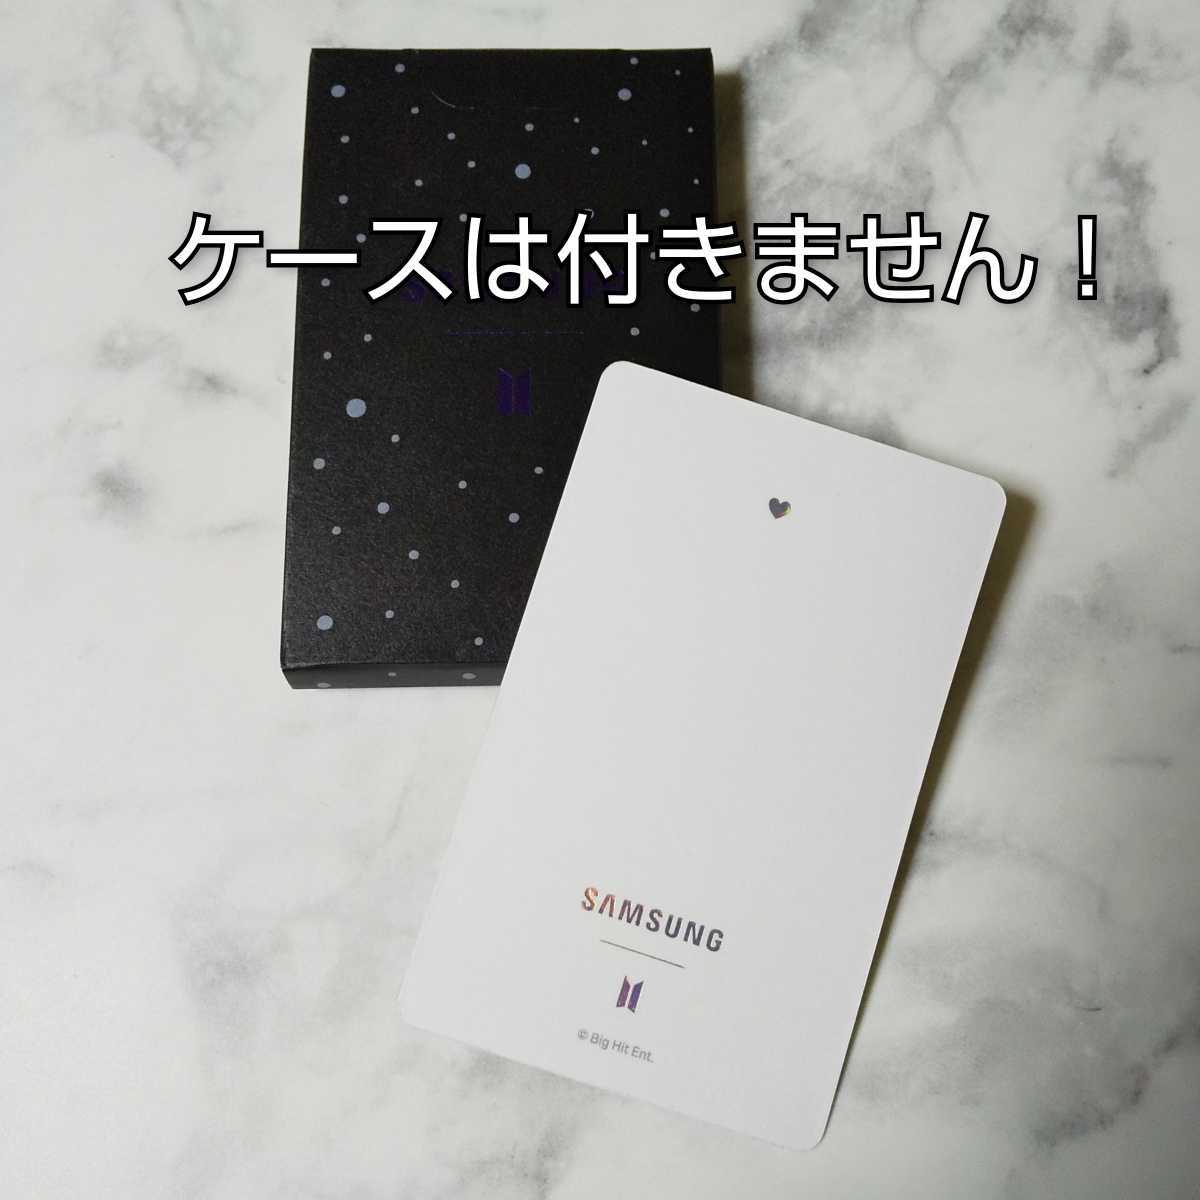 【公式商品】Galaxy S20+ BTS Edition スマホ購入特典トレカ★RM【ケースなし】